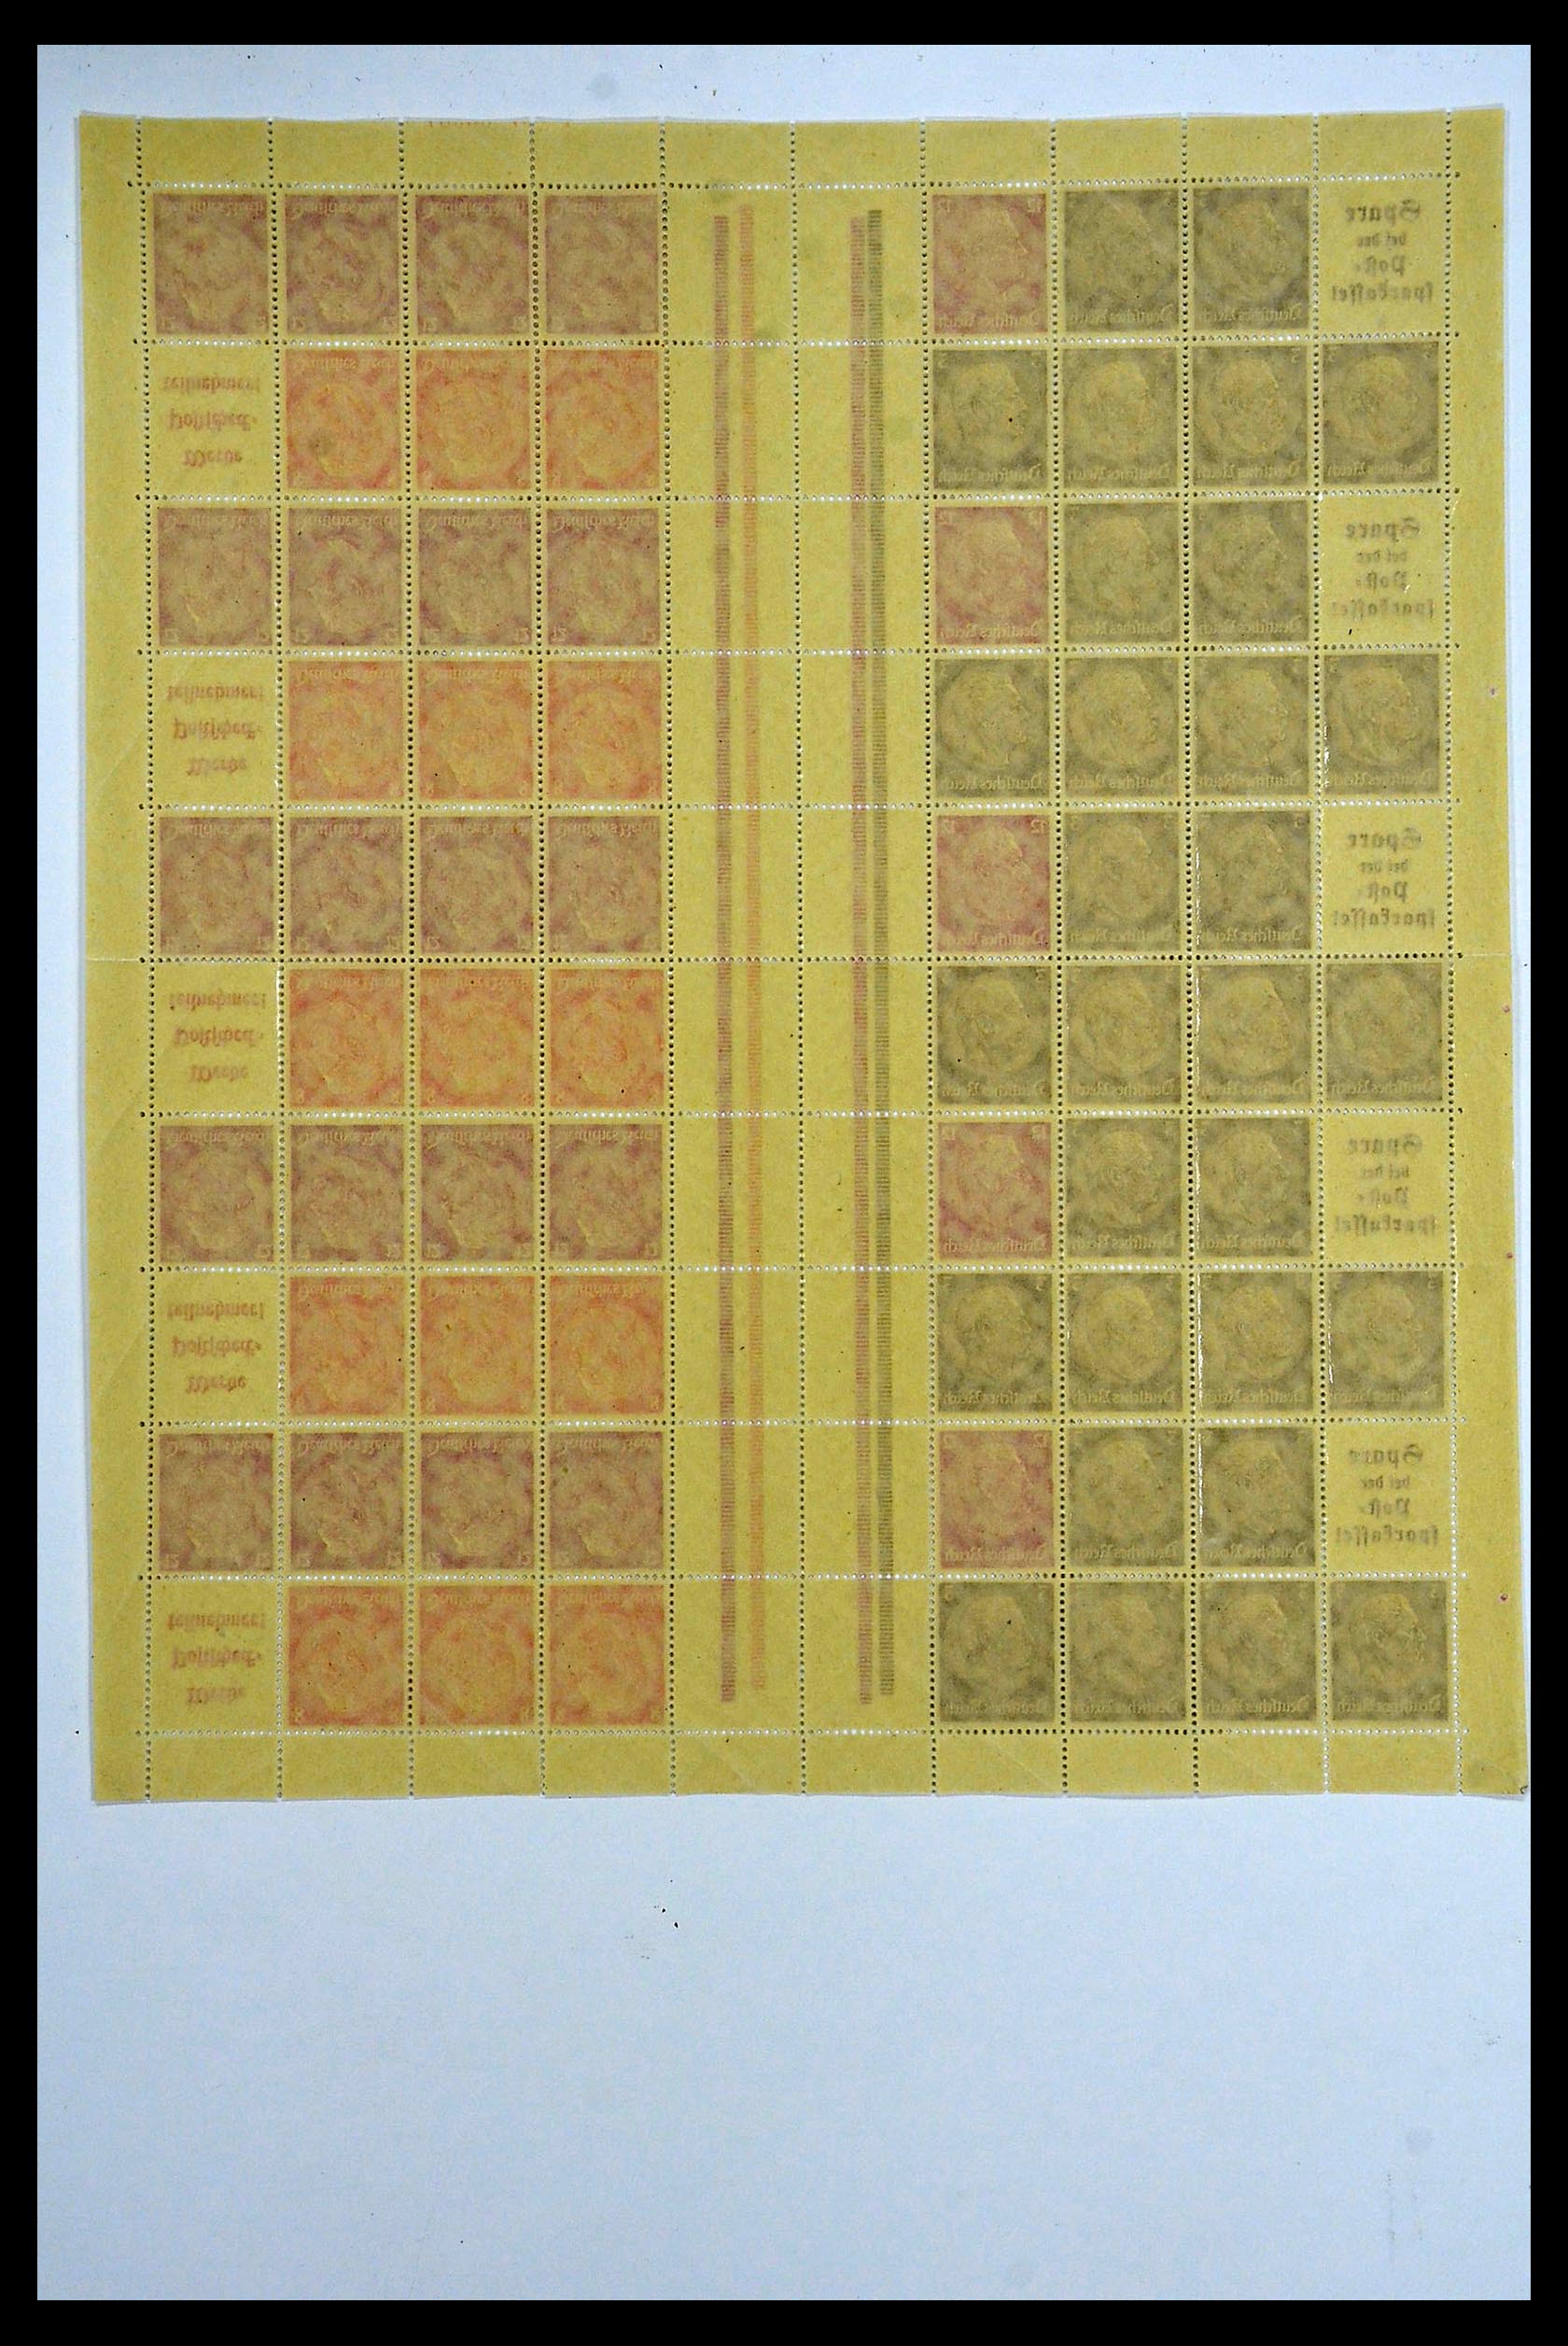 34164 034 - Stamp collection 34164 German Reich Markenheftchenbogen 1933-1942.